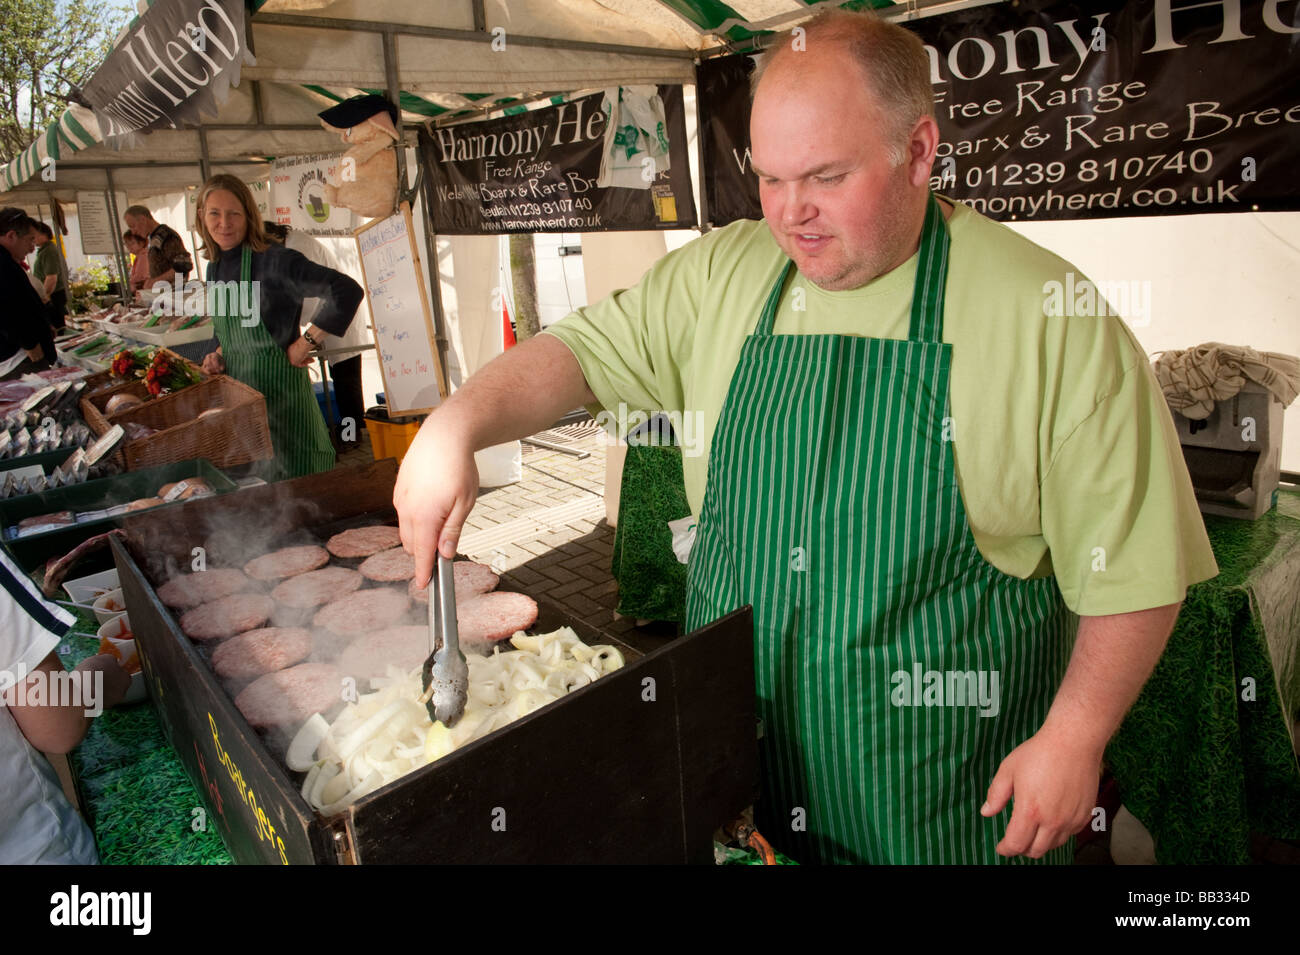 Stattlicher Mann Kochen Bio Freilandhaltung Schweinefleisch Burger auf einem Marktstand Aberystwyth Bauernmarkt Wales UK Stockfoto